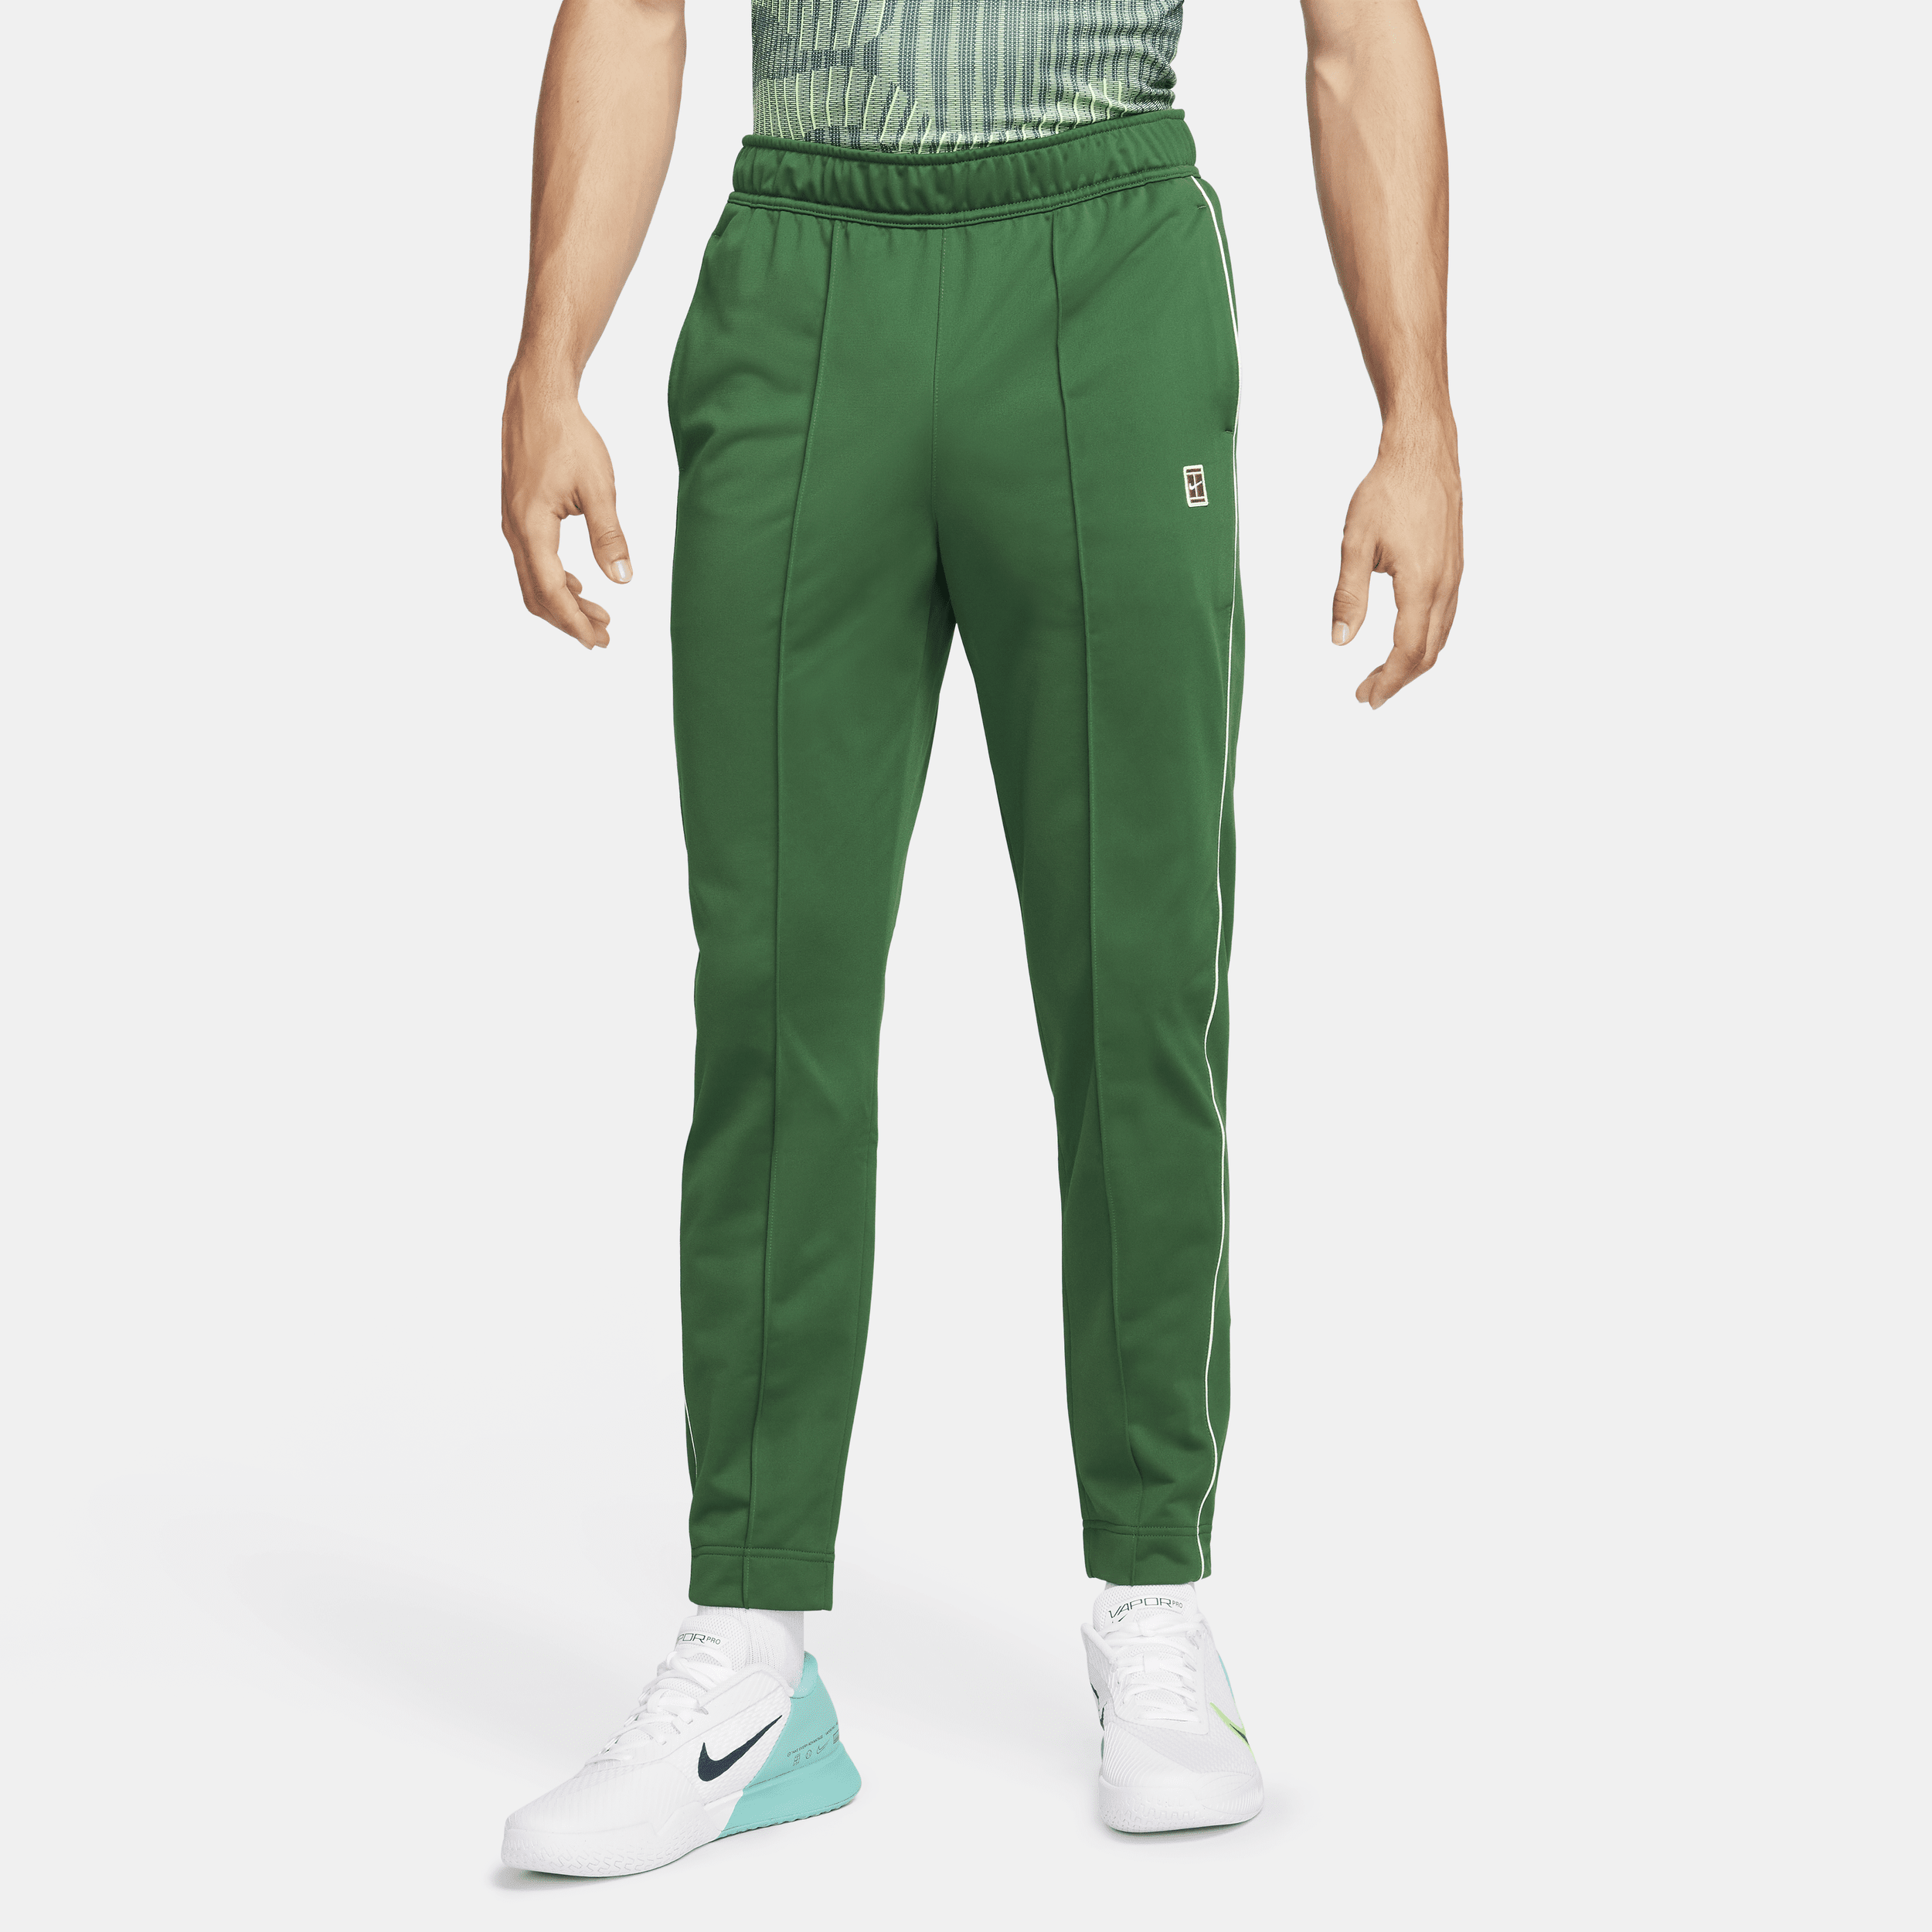 NikeCourt Pantalón de tenis - Hombre - Verde